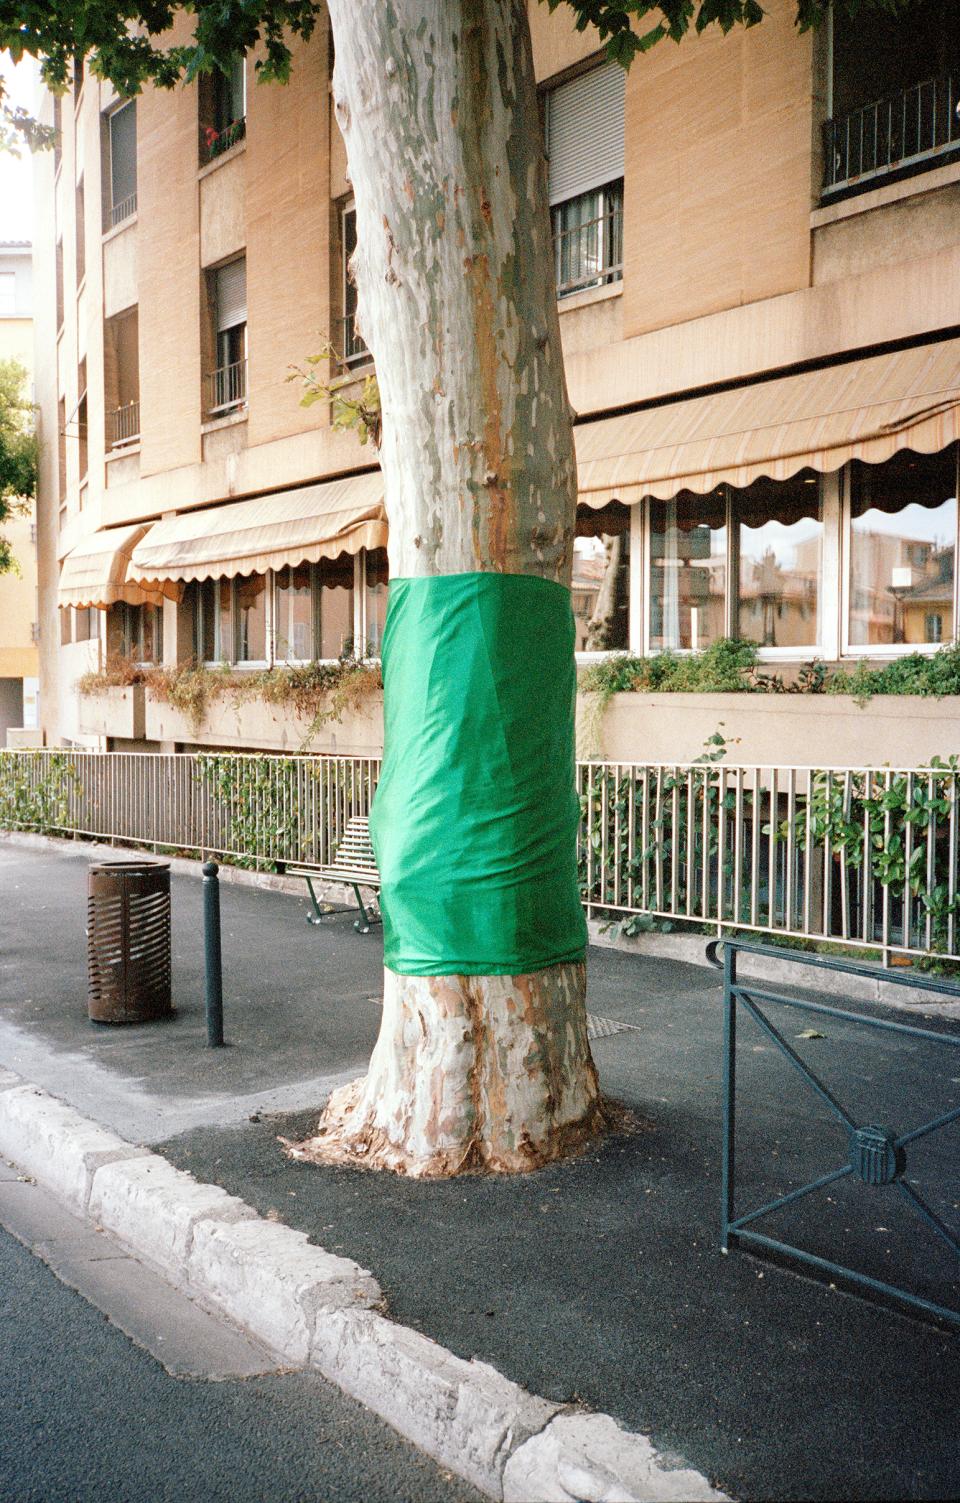 Baum auf dem Gehweg, welcher zum Schutz mit Kunststoff-Folie umwickelt ist